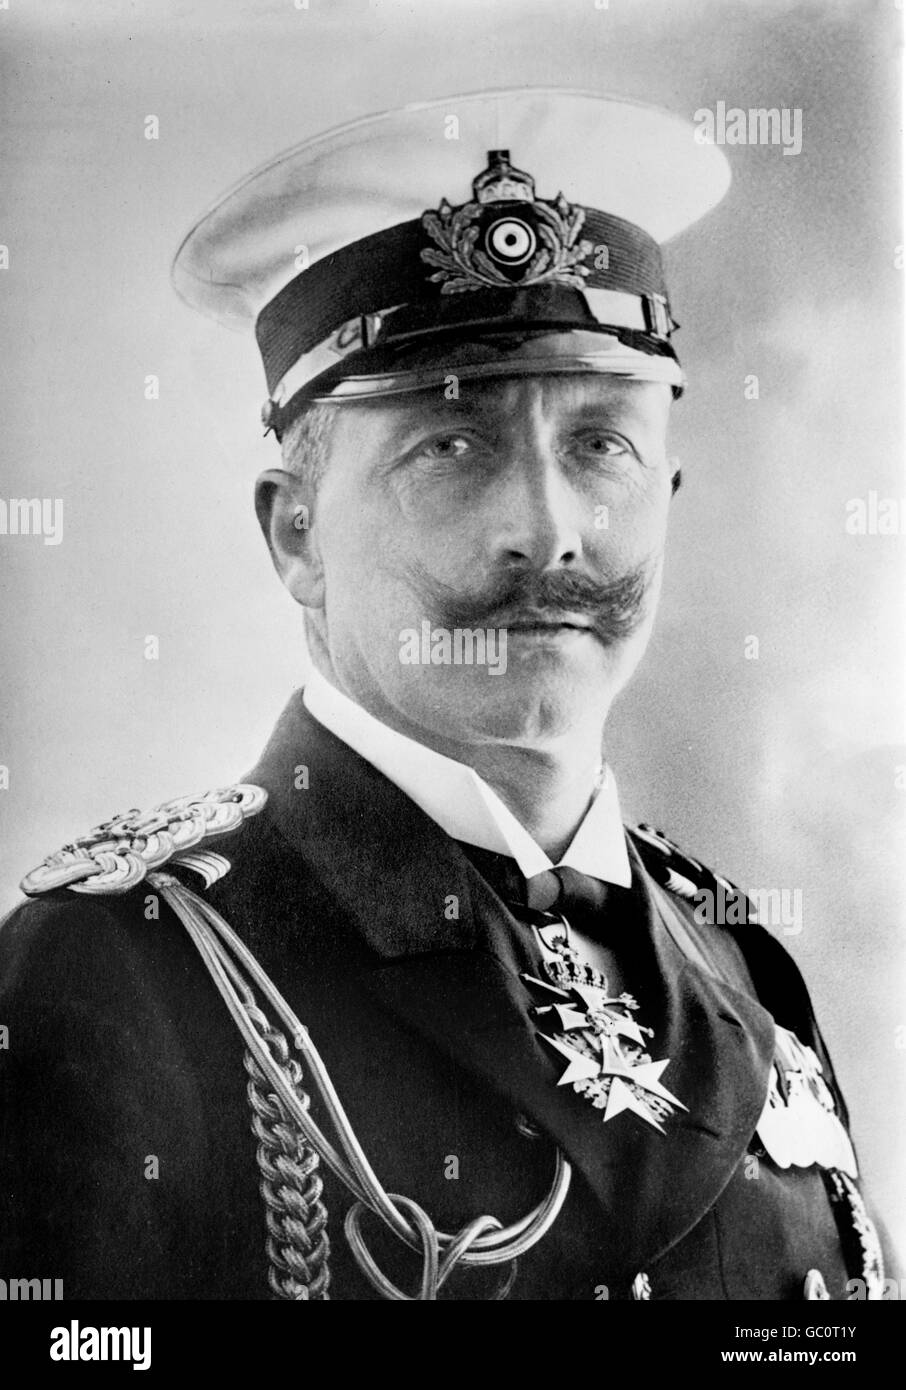 Kaiser Wilhelm II (1859-1941). Porträt des Kaisers von Deutschland und König von Preußen, Marine Uniform tragen.  Foto von Bain News Service, c.1910-1915. Stockfoto